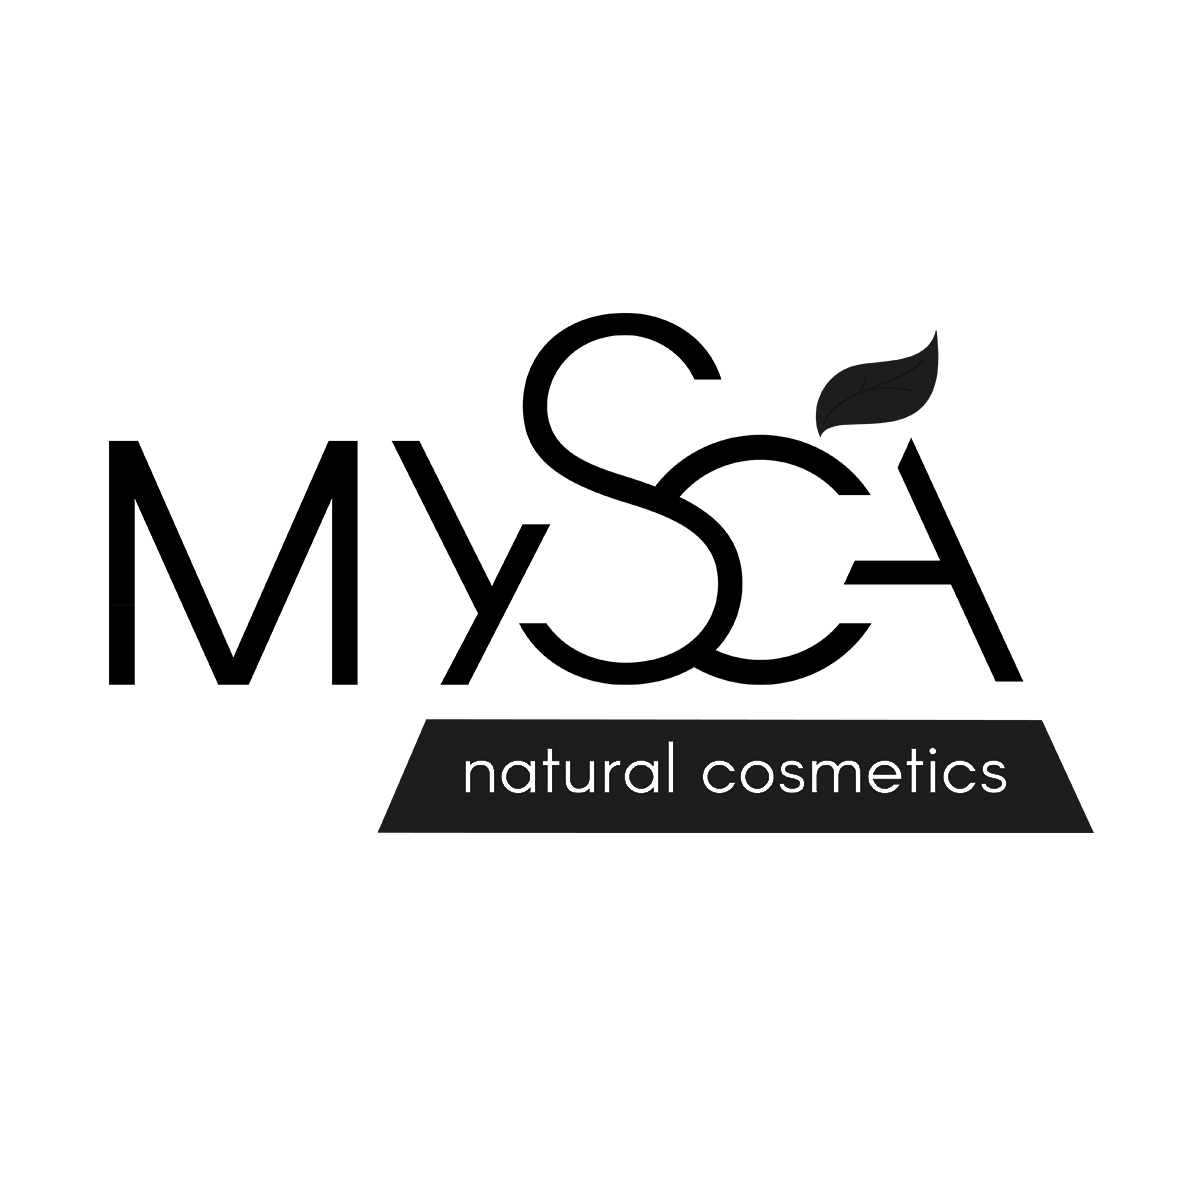 MYSCA Natural Cosmetics - Alfonso D'Niscio Brooks